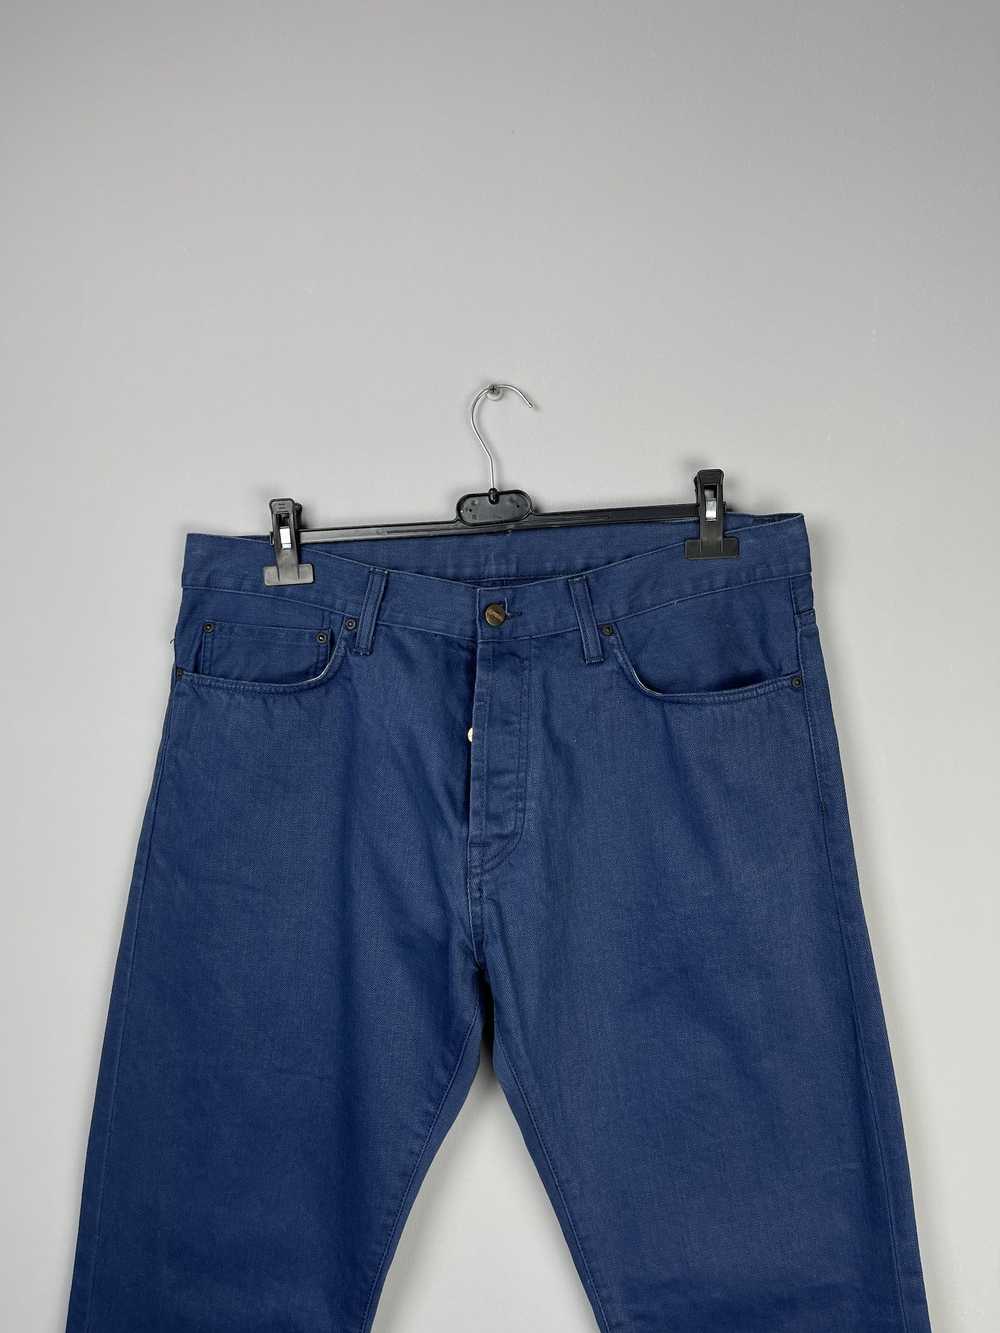 Carhartt × Streetwear Carhartt Klondike Pant Jeans - image 5